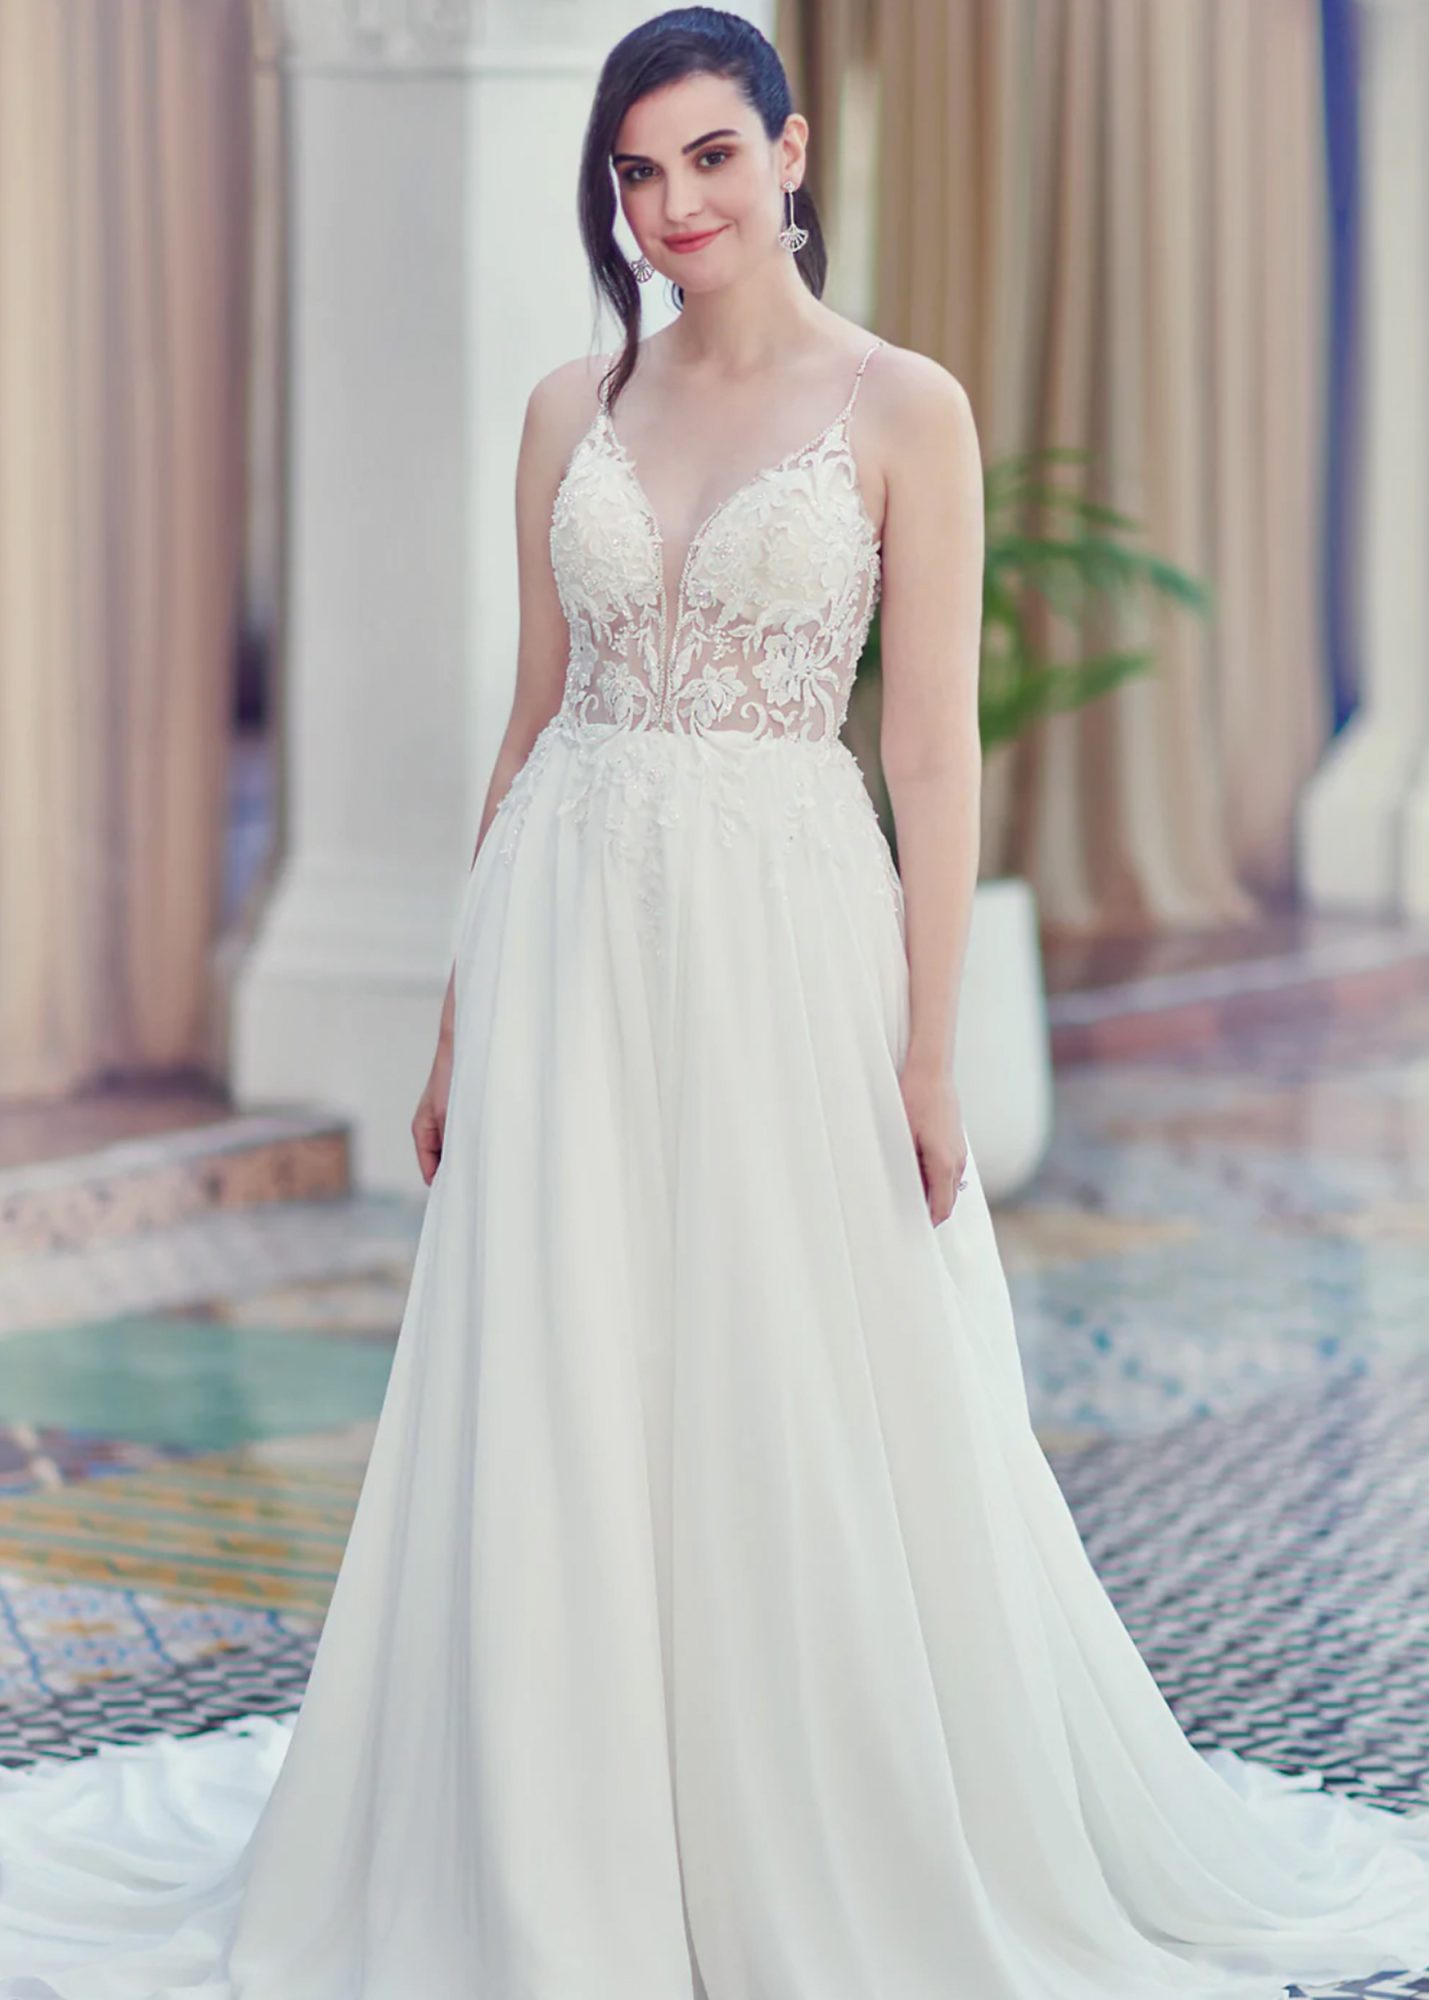 Hochzeitskleid mit transparenten Oberteil mit Spitzenapplikationen und Glitzer und Chiffonrock.